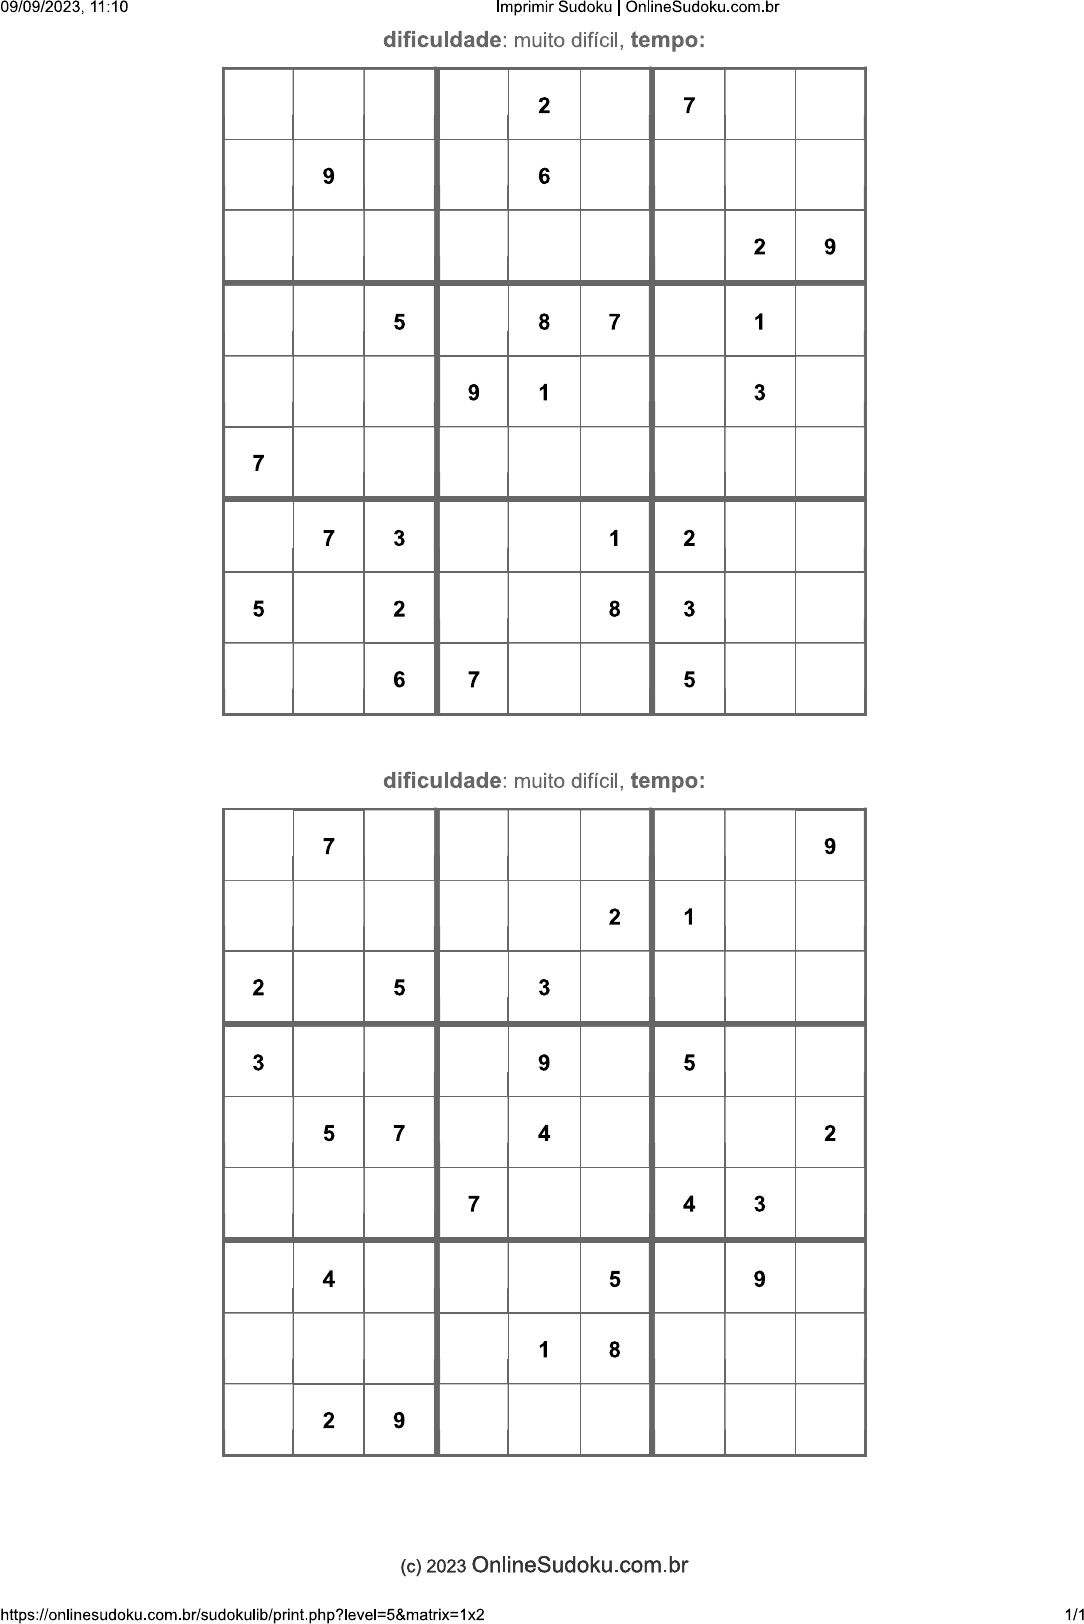 Resolvendo sudoku muito difícil (segundo a revista) 